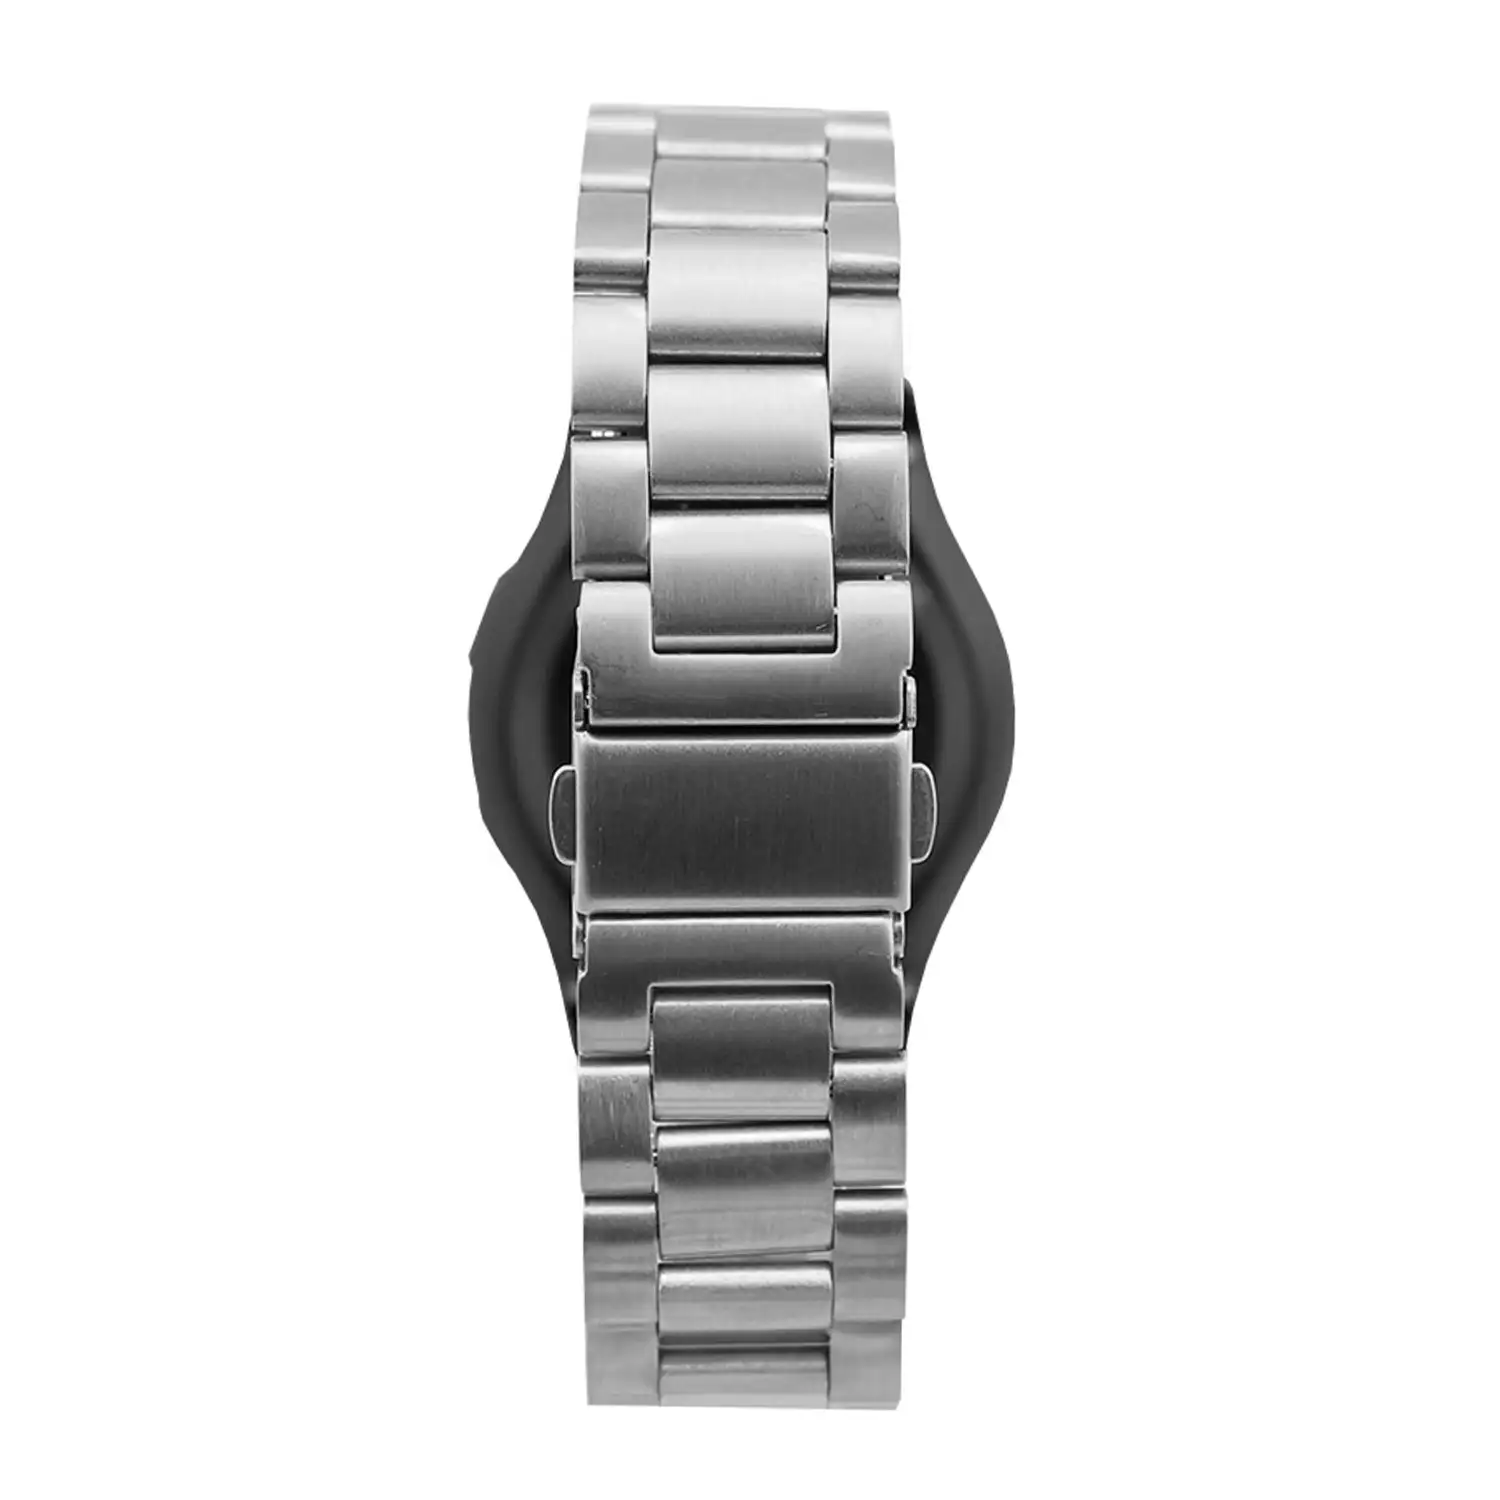 Correa universal de acero inoxidable para relojes de 20mm.Sistema Quick Release de fácil cambio.